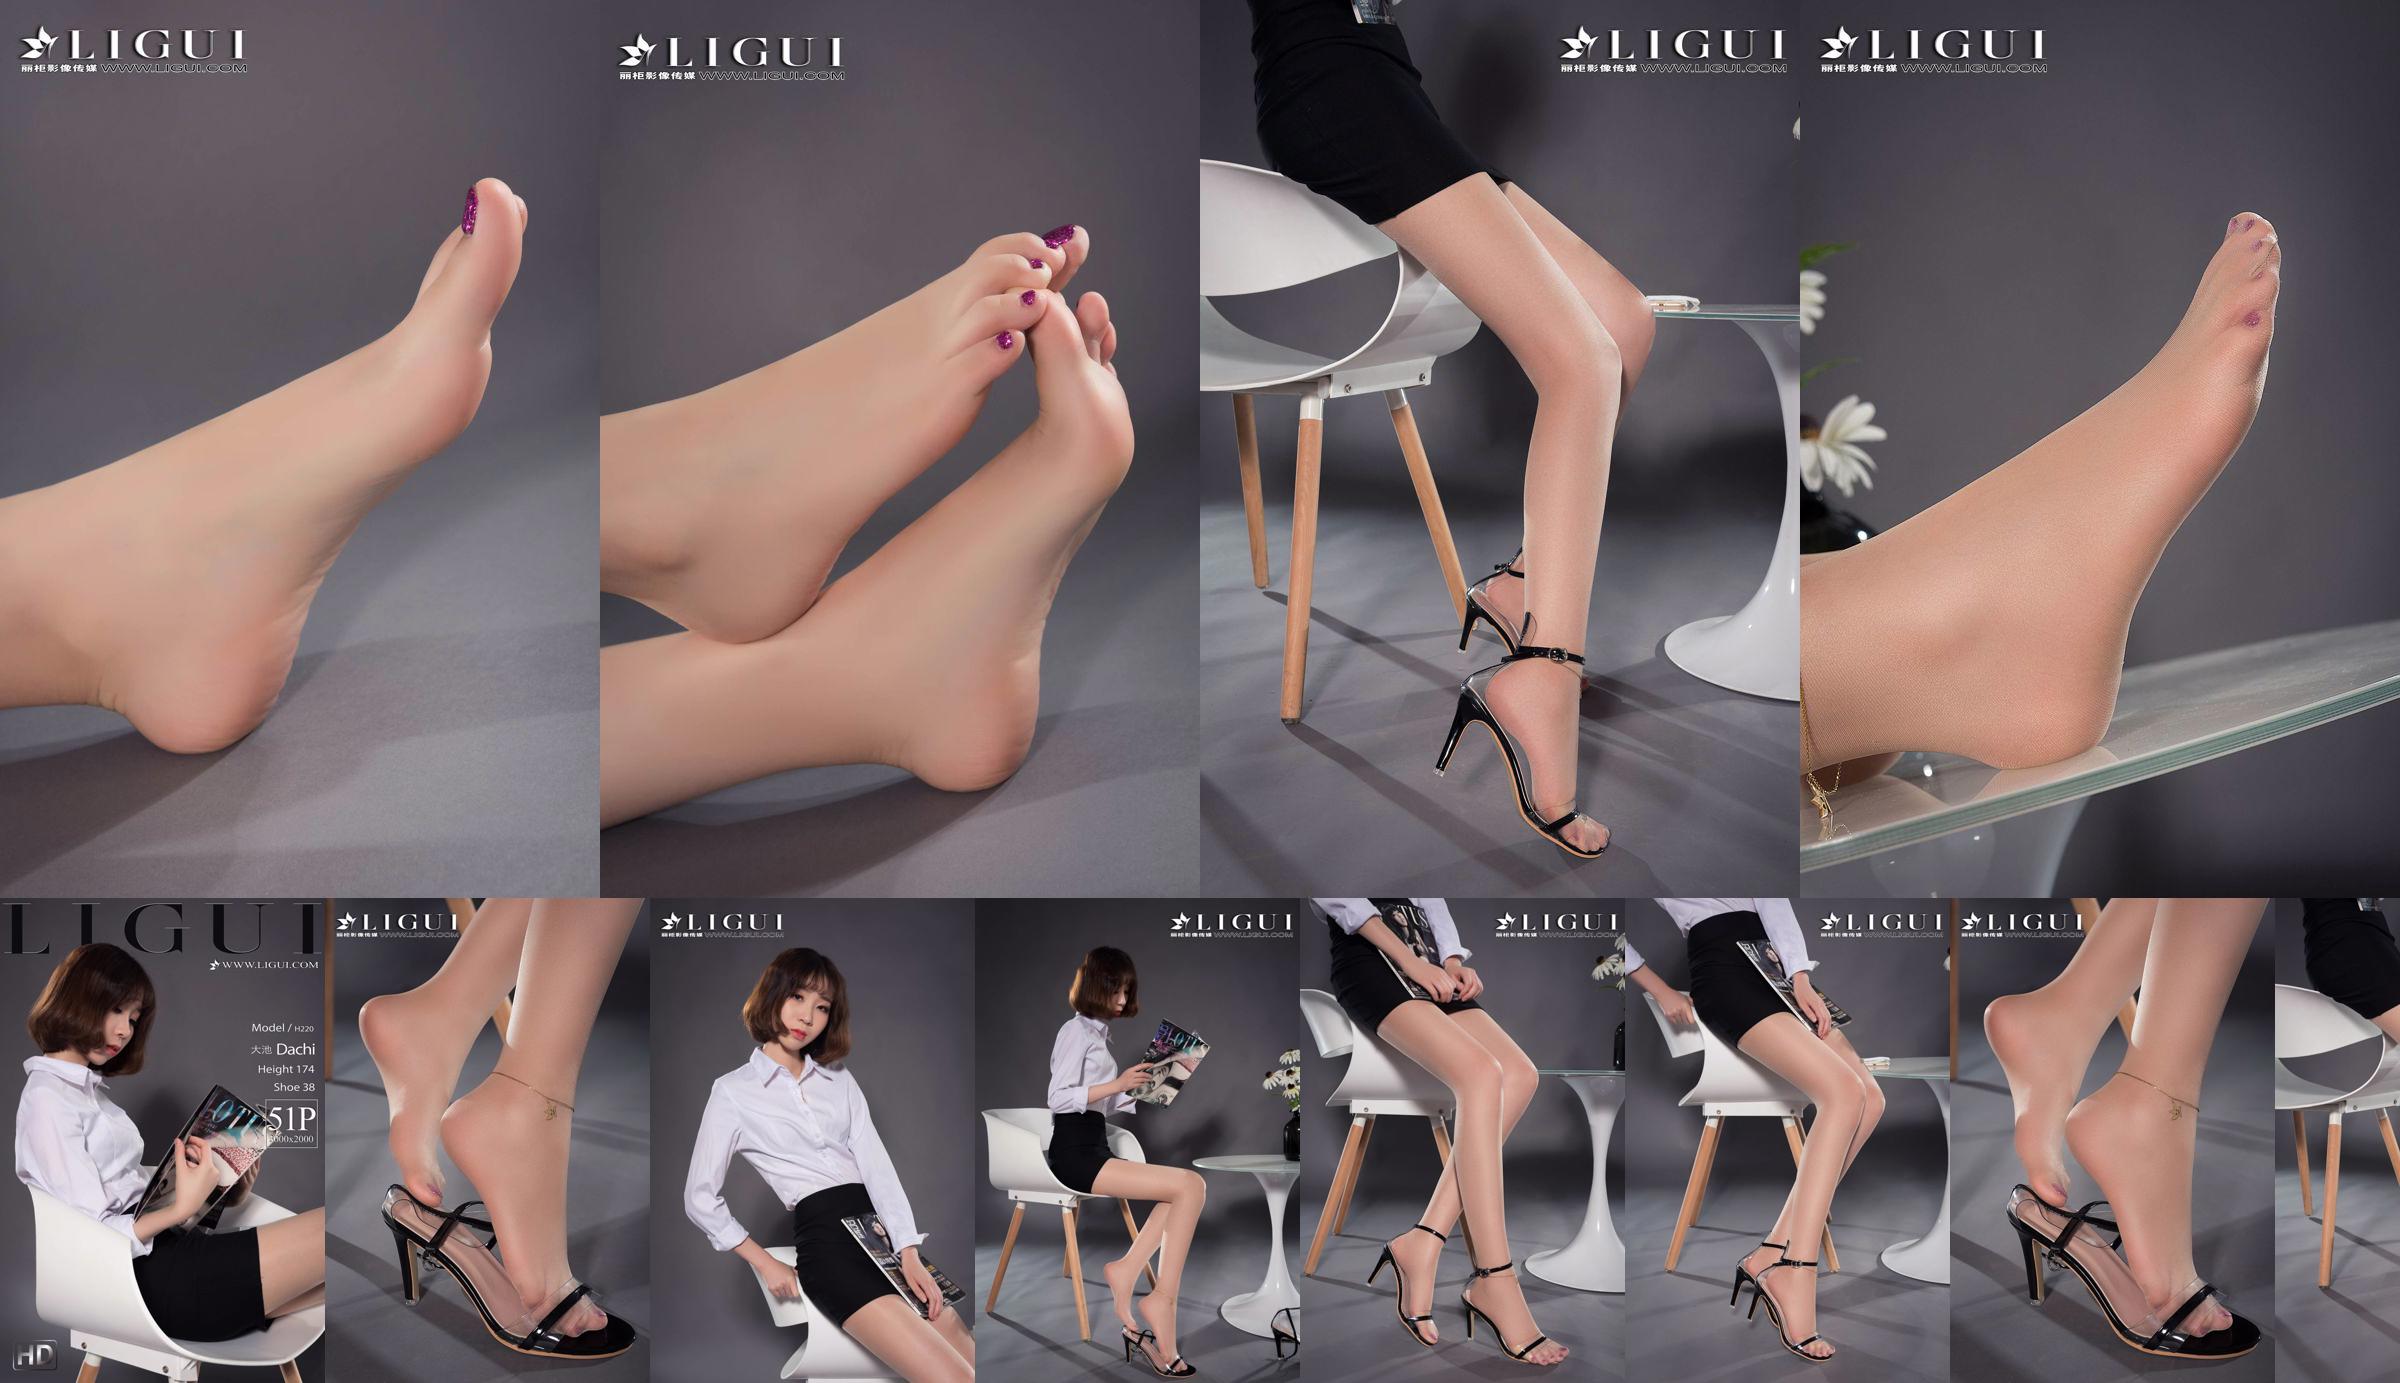 Người mẫu chân Oike "Heo với giày cao gót CV" [Ligui Ligui] Vẻ đẹp Internet No.3df6a3 Trang 2